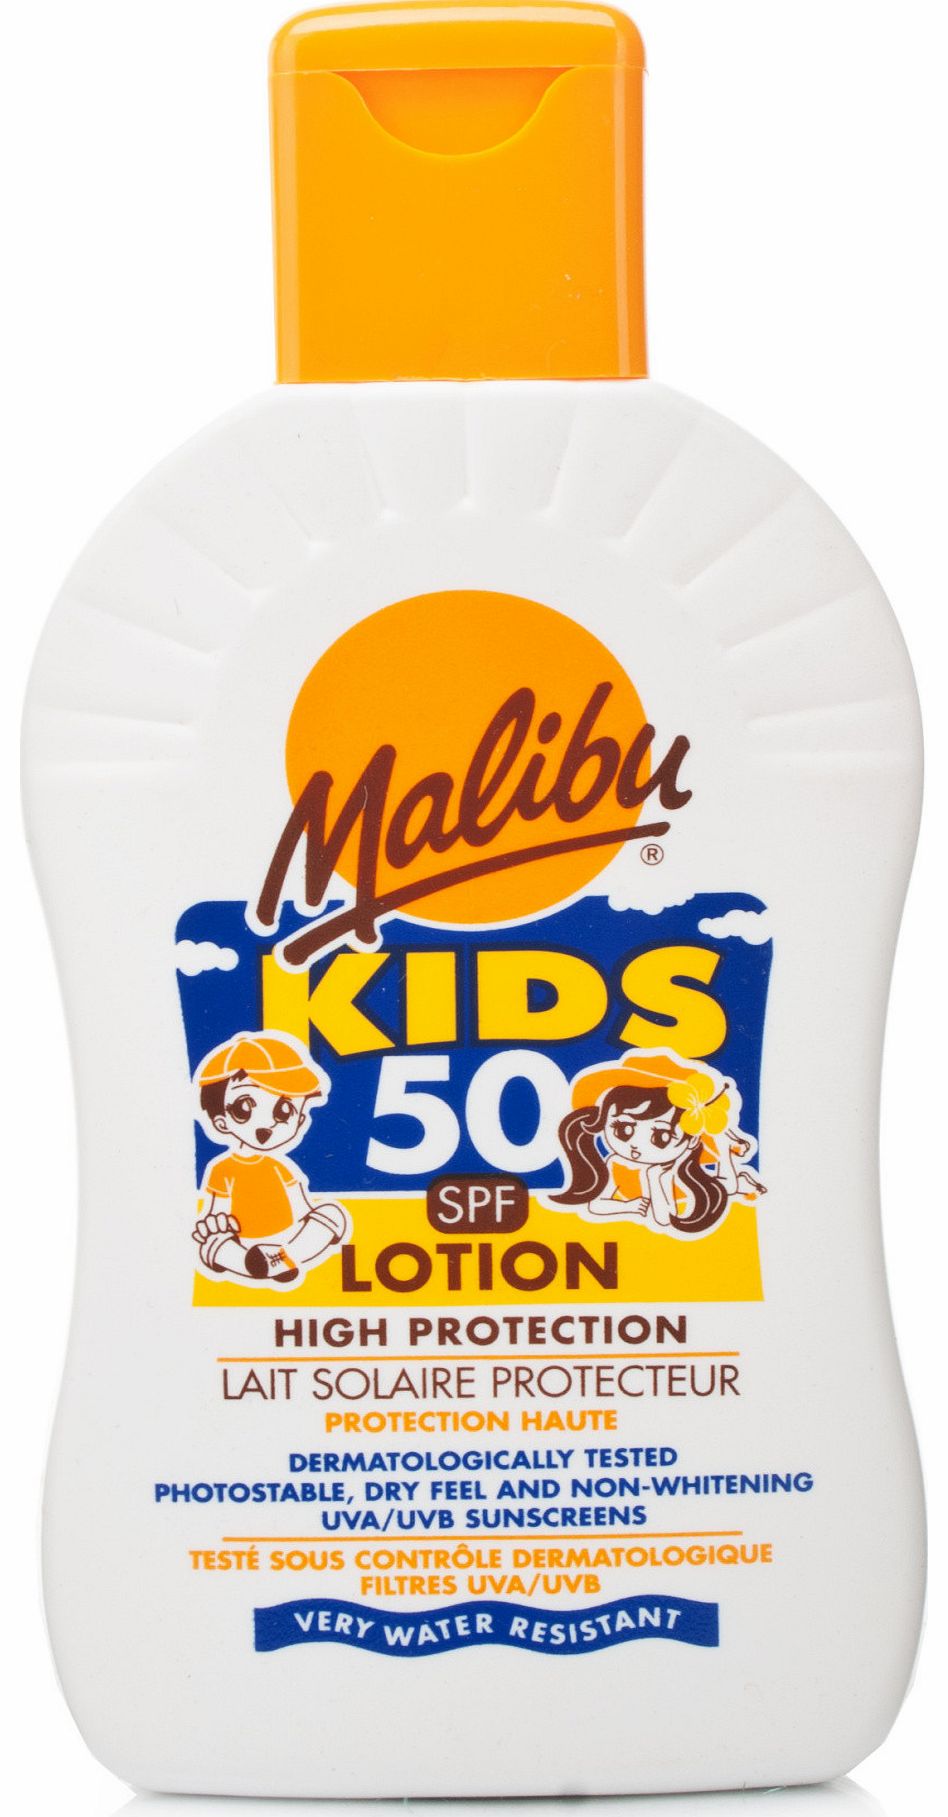 Malibu Kids SPF50 Lotion